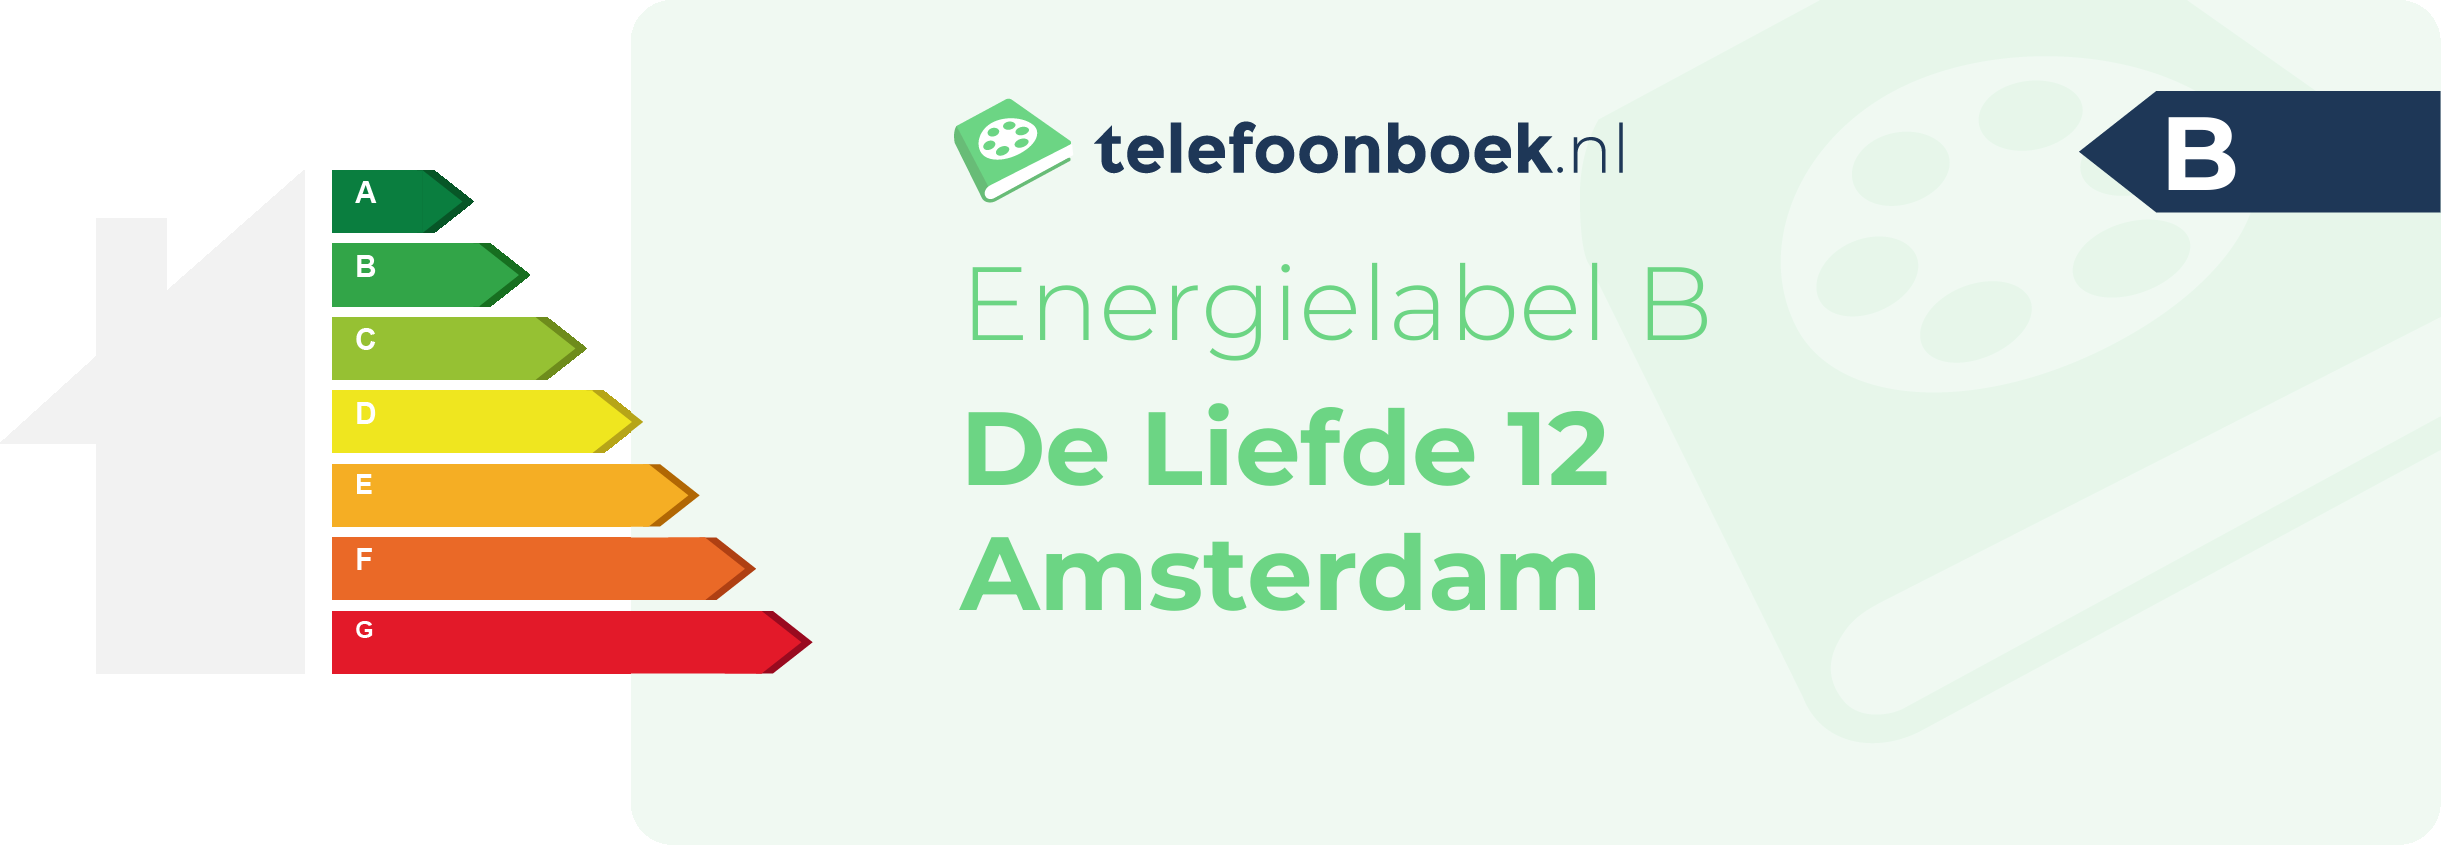 Energielabel De Liefde 12 Amsterdam